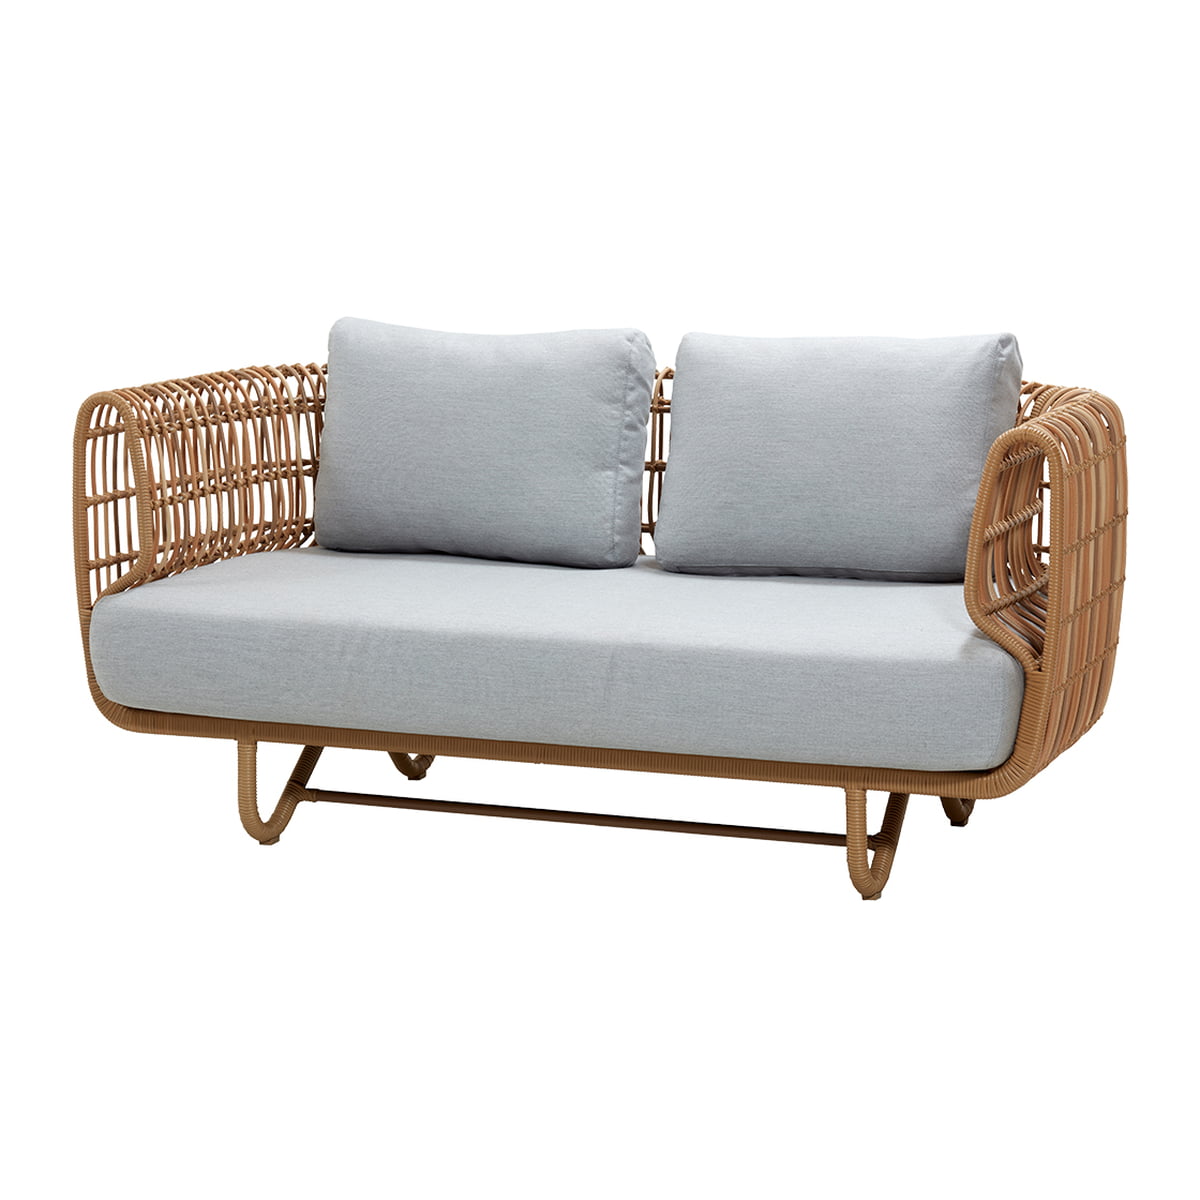 Cane-line - Nest Sofa Outdoor | Connox